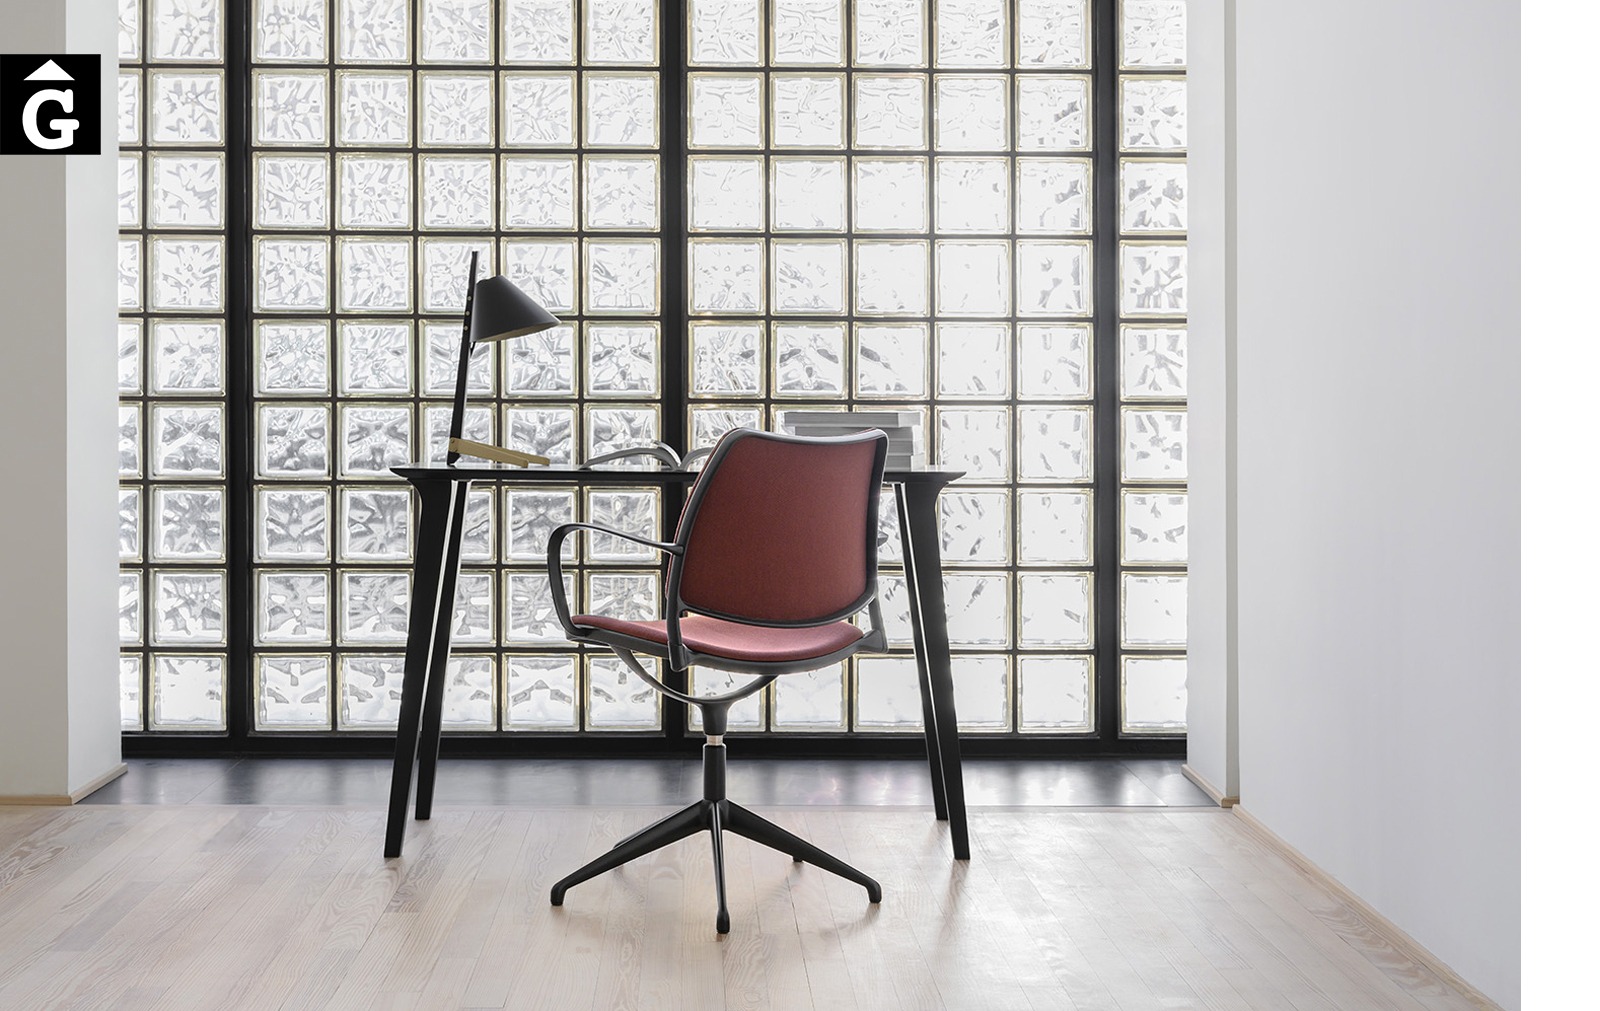 Moble escriptori Lau | Stua | mobles de qualitat i disseny | mobles Gifreu